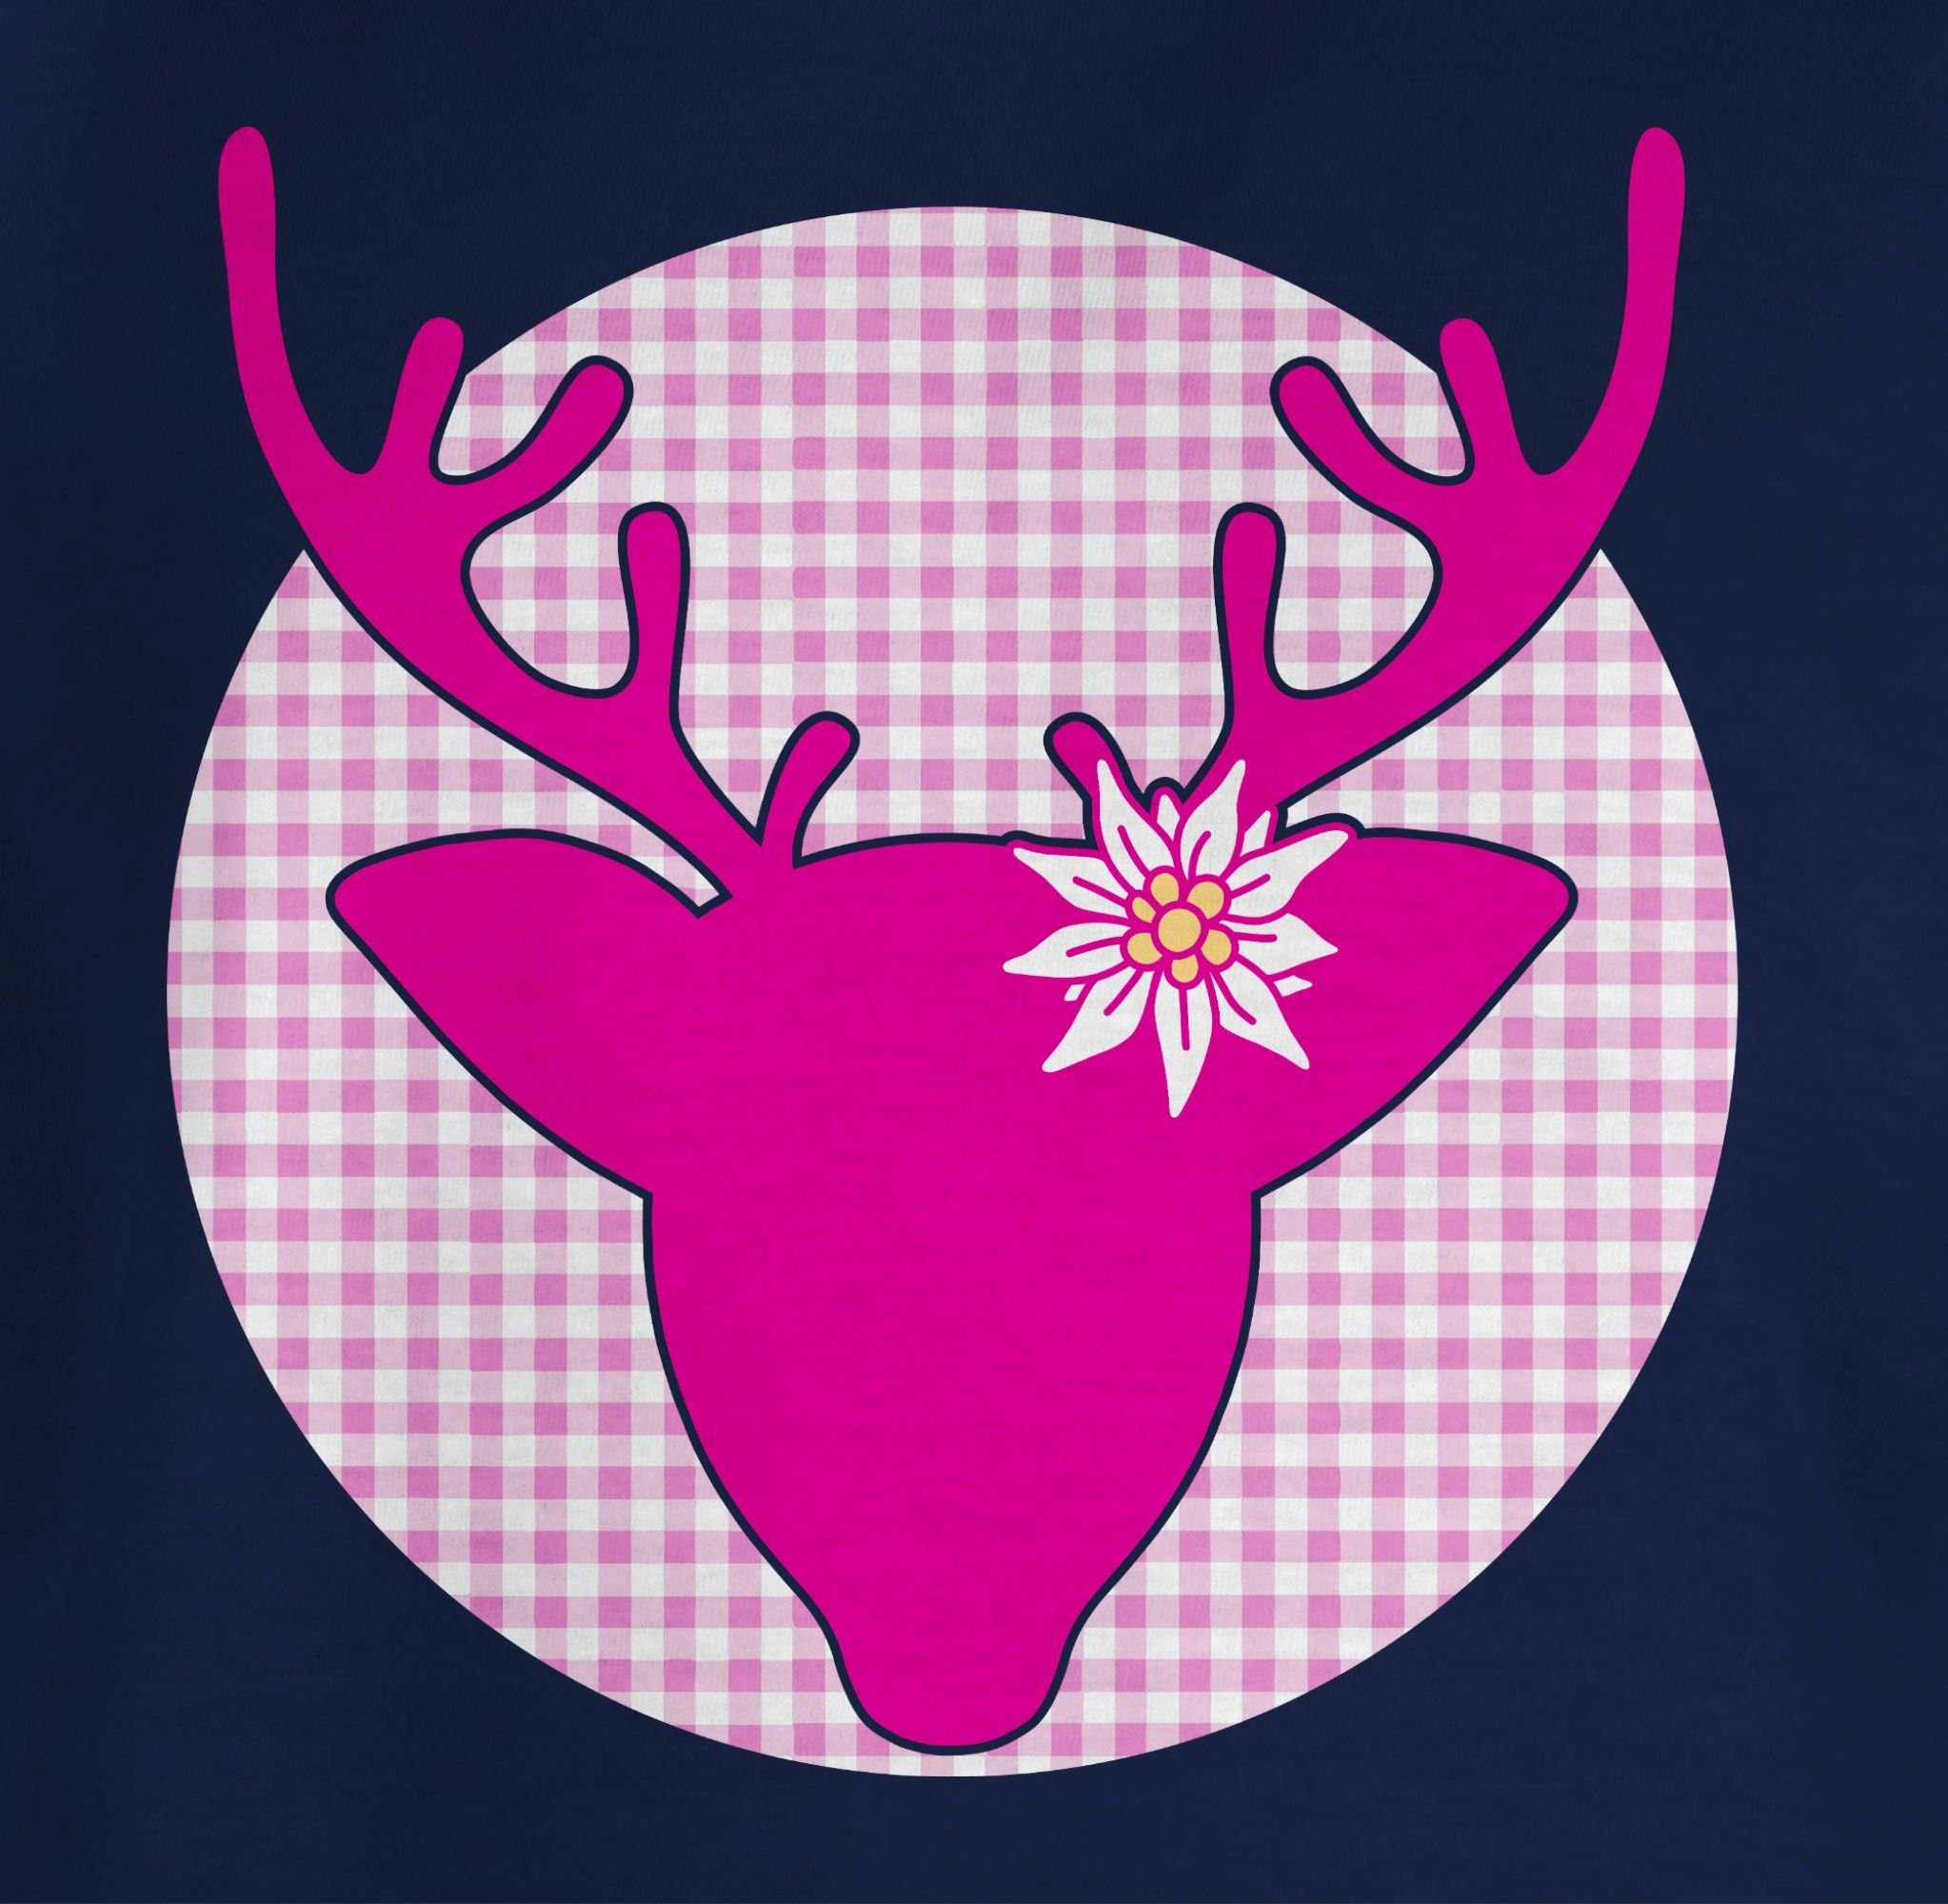 Mode Shirtracer für Oktoberfest Hirsch 1 Dunkelblau Edelweiß Kinder T-Shirt Outfit